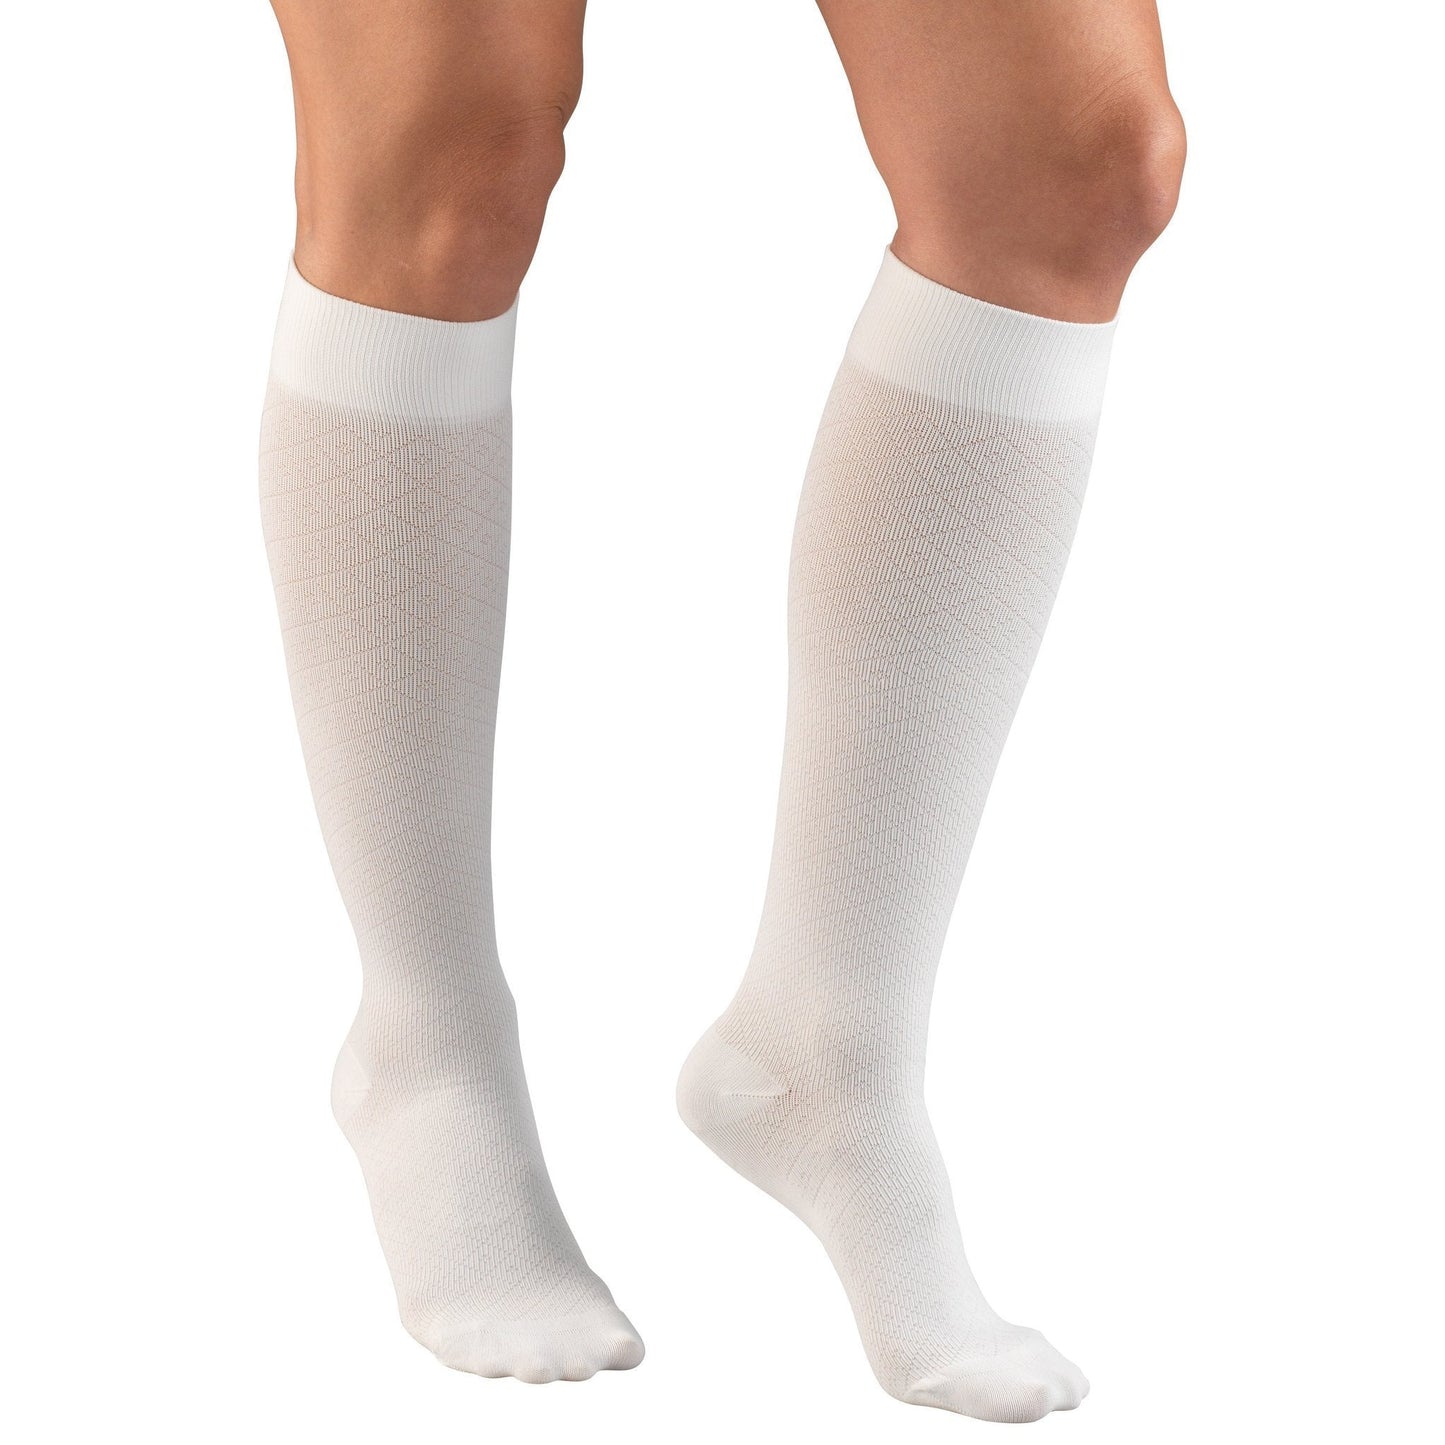 Truform Women's Trouser 15-20 mmHg Diamond Knee High, White